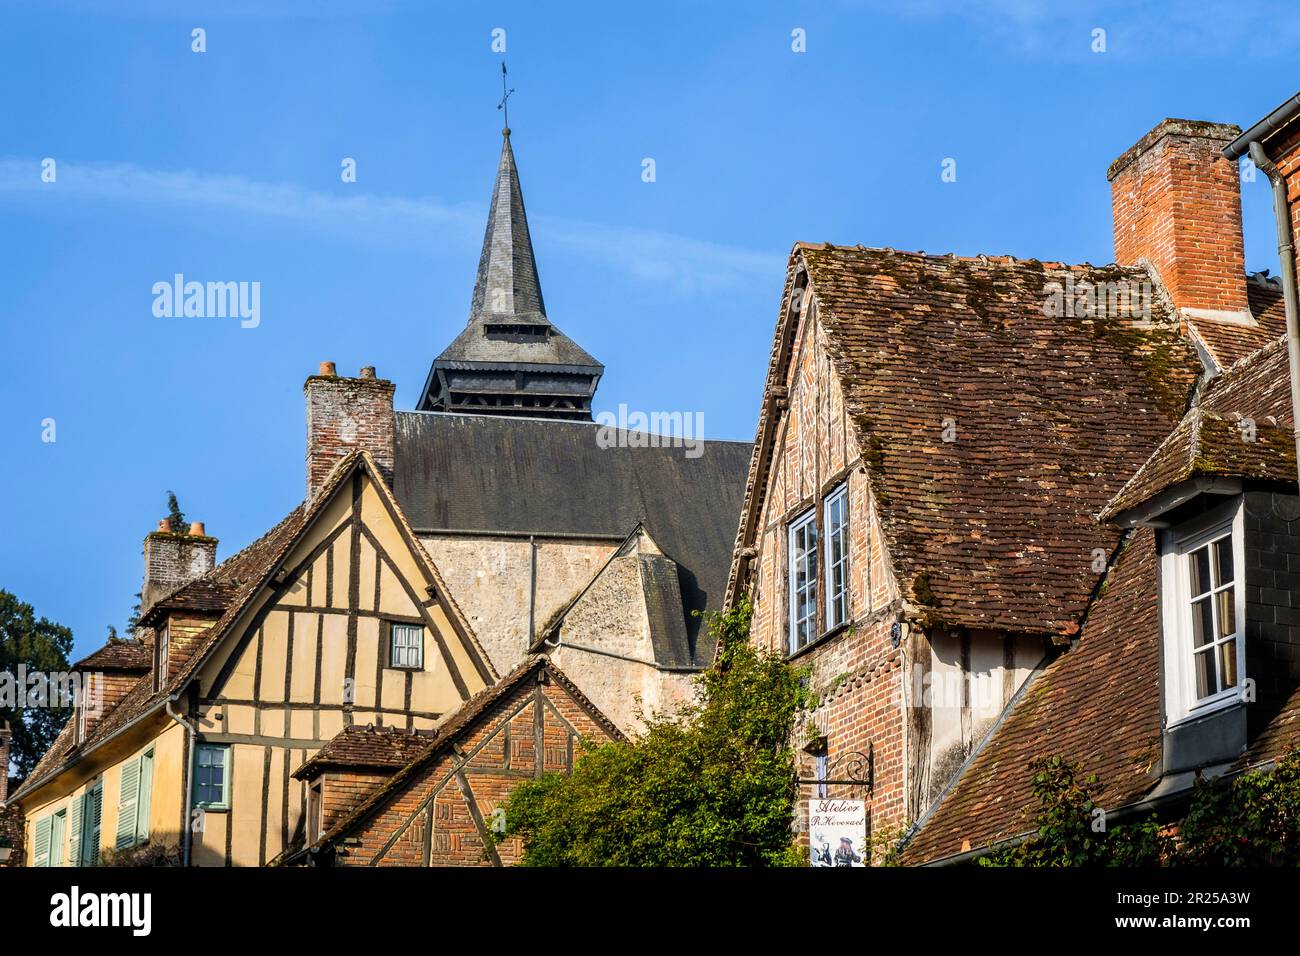 Gerberoy fait partie du plus beau village de France - Homme marchant dans la rue | Gerberoy avec ses rues pavés typiques, ses toitures de tuiles r Banque D'Images